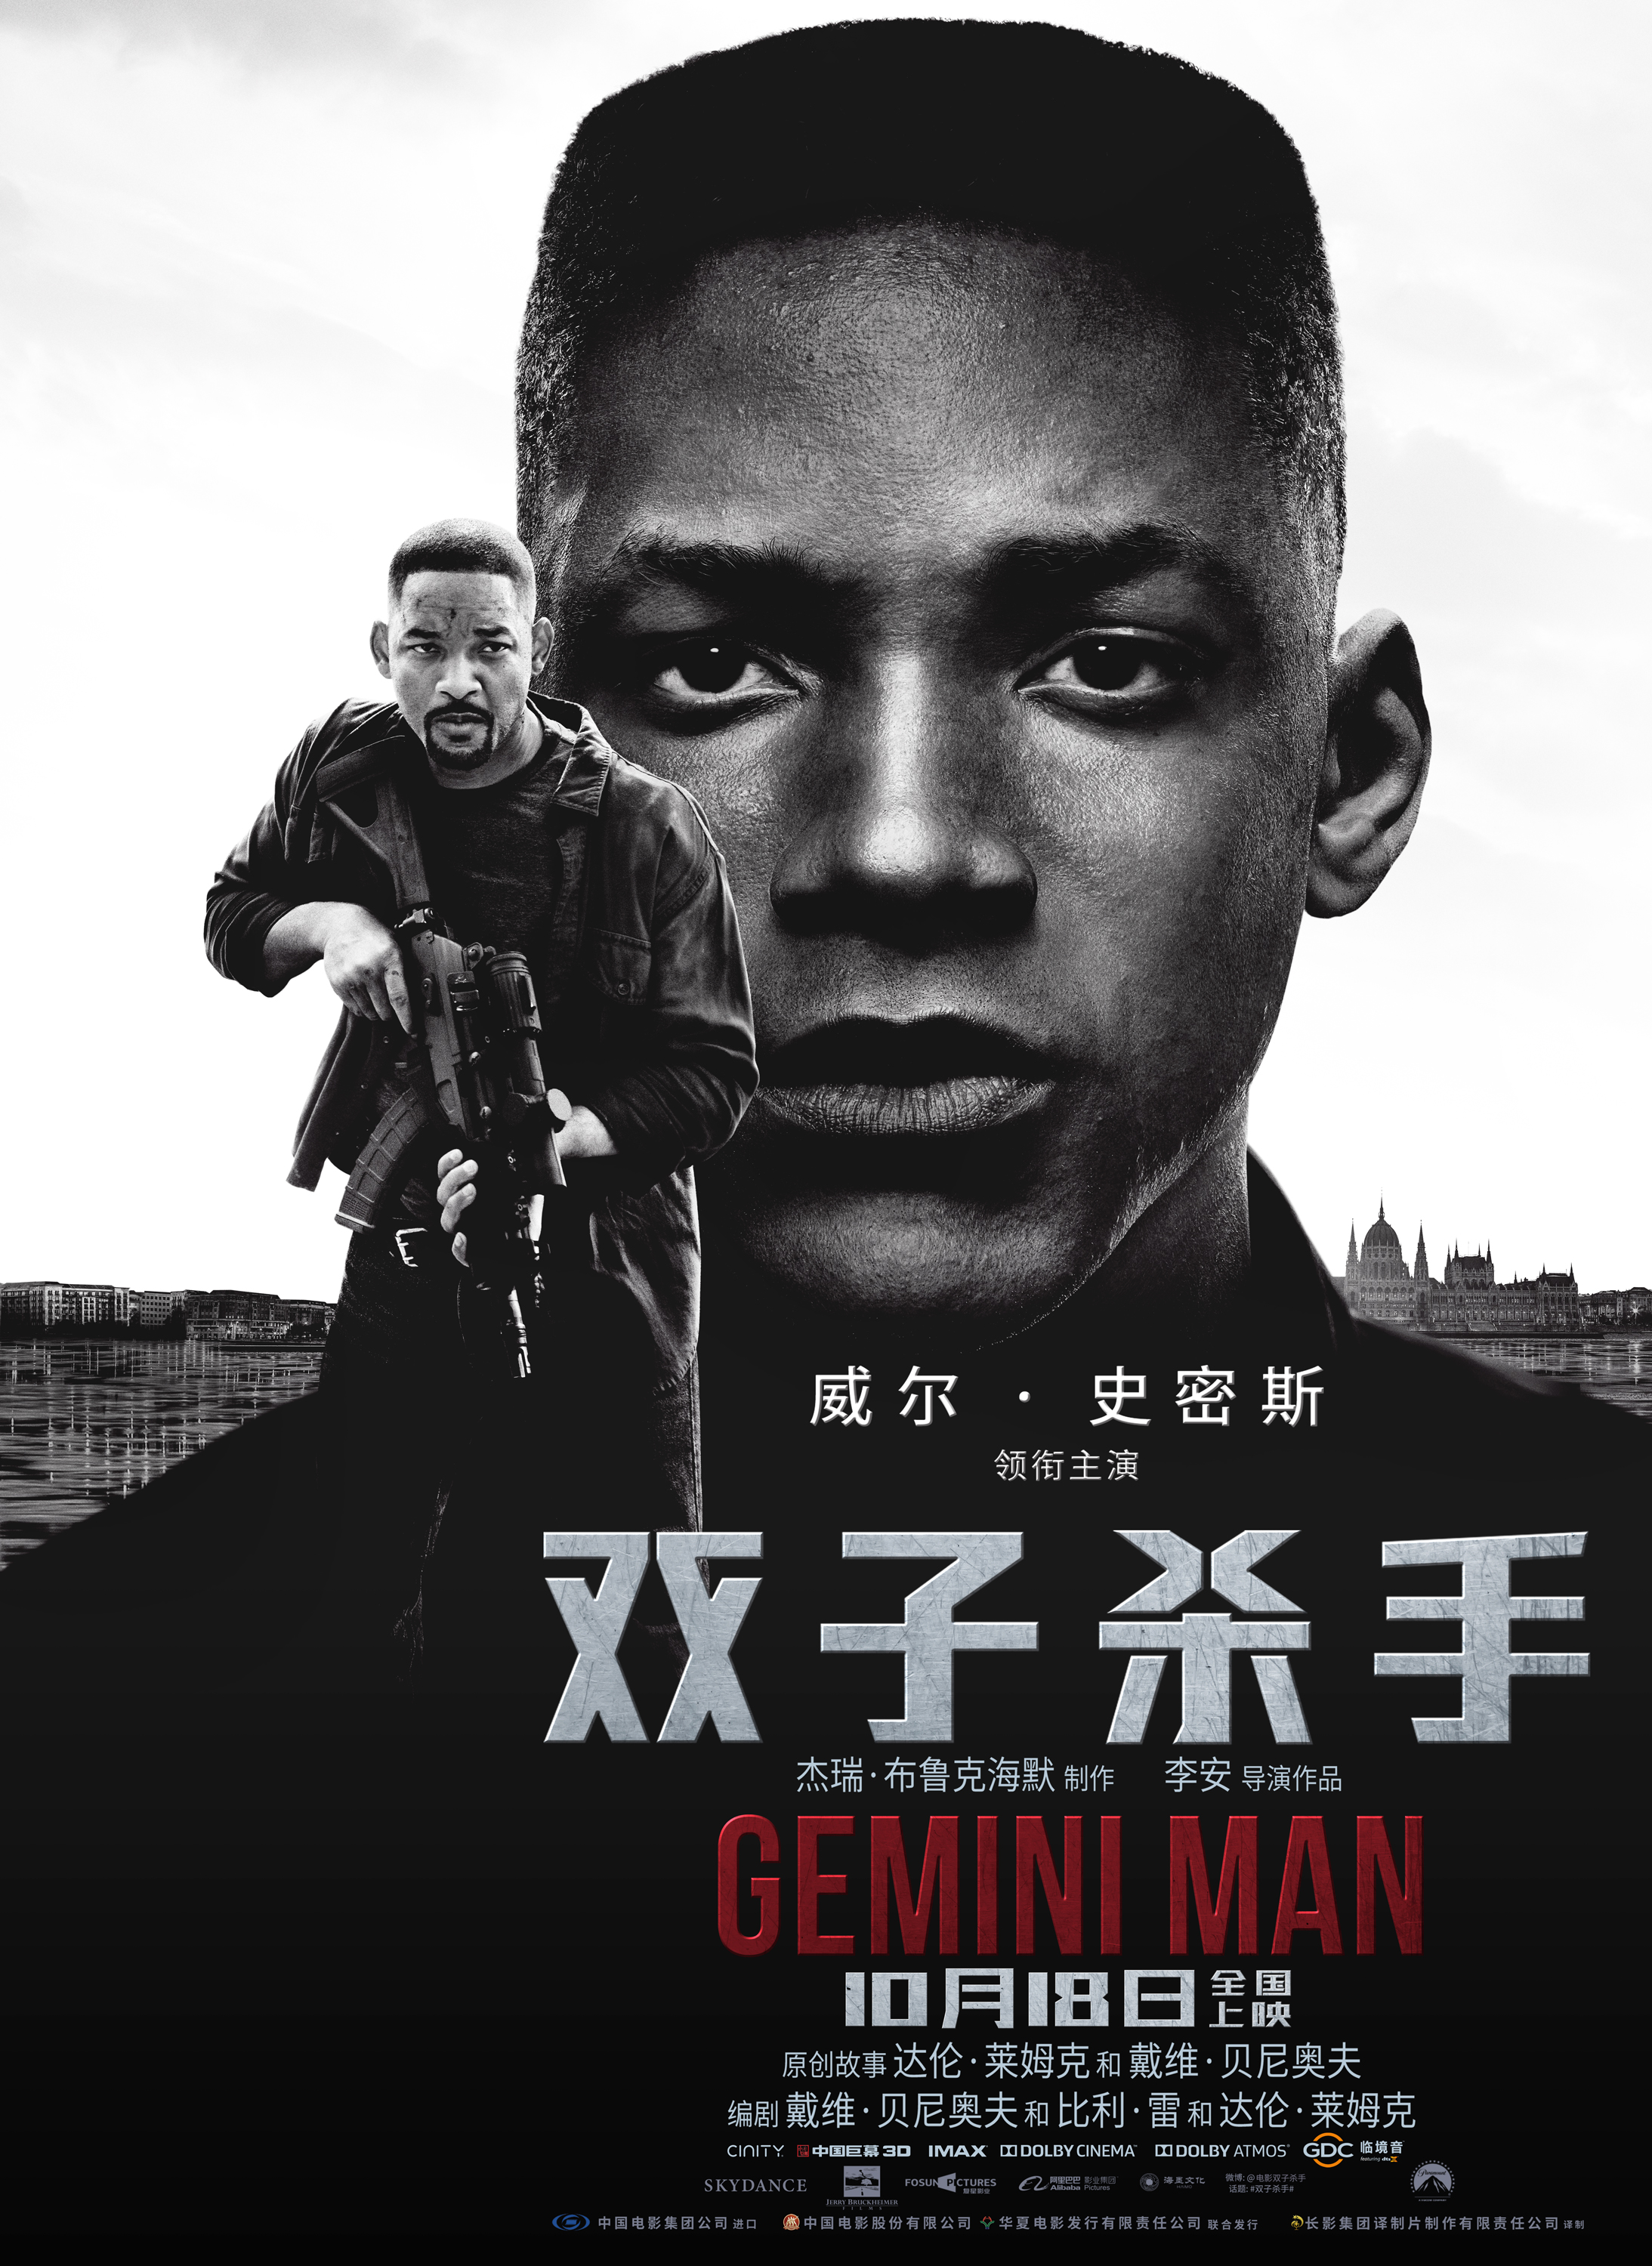 双子杀手/双子任务：叠影危机(港)/双子煞星 [DIY国语音轨/国配简繁/双语特效四字幕] Gemini Man 2019 BluRay 1080p AVC Atmos TrueHD7.1-baymaxlei@OurBits    [45.58 GB]-2.jpg